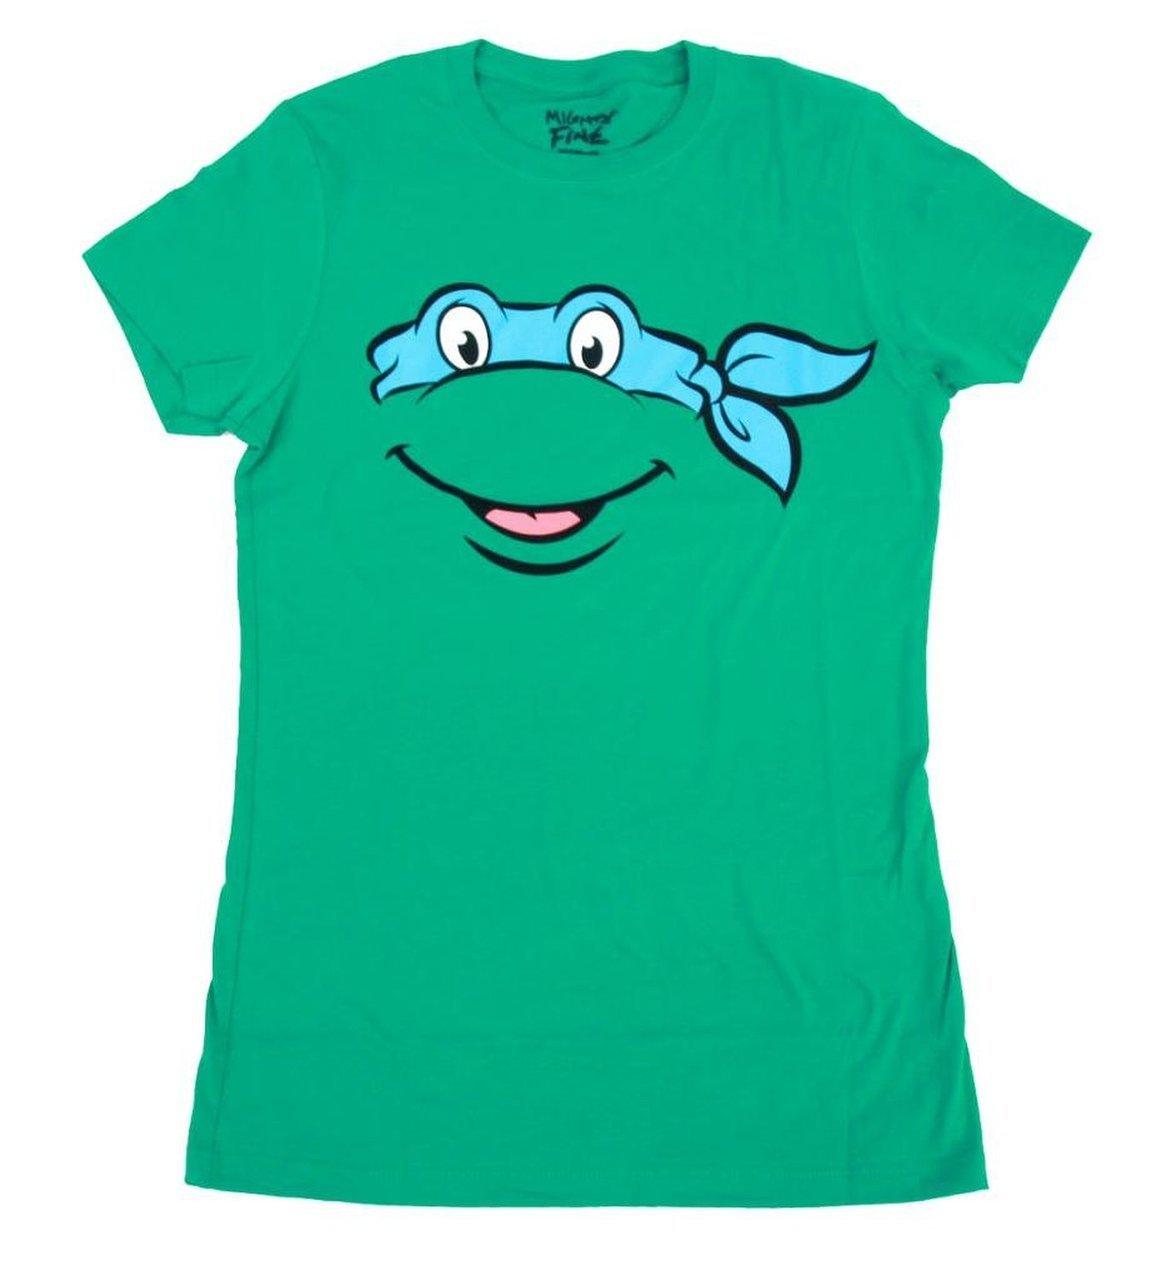 TMNT Teenage Mutant Ninja Turtles Big Face T-Shirt - Green - 2x